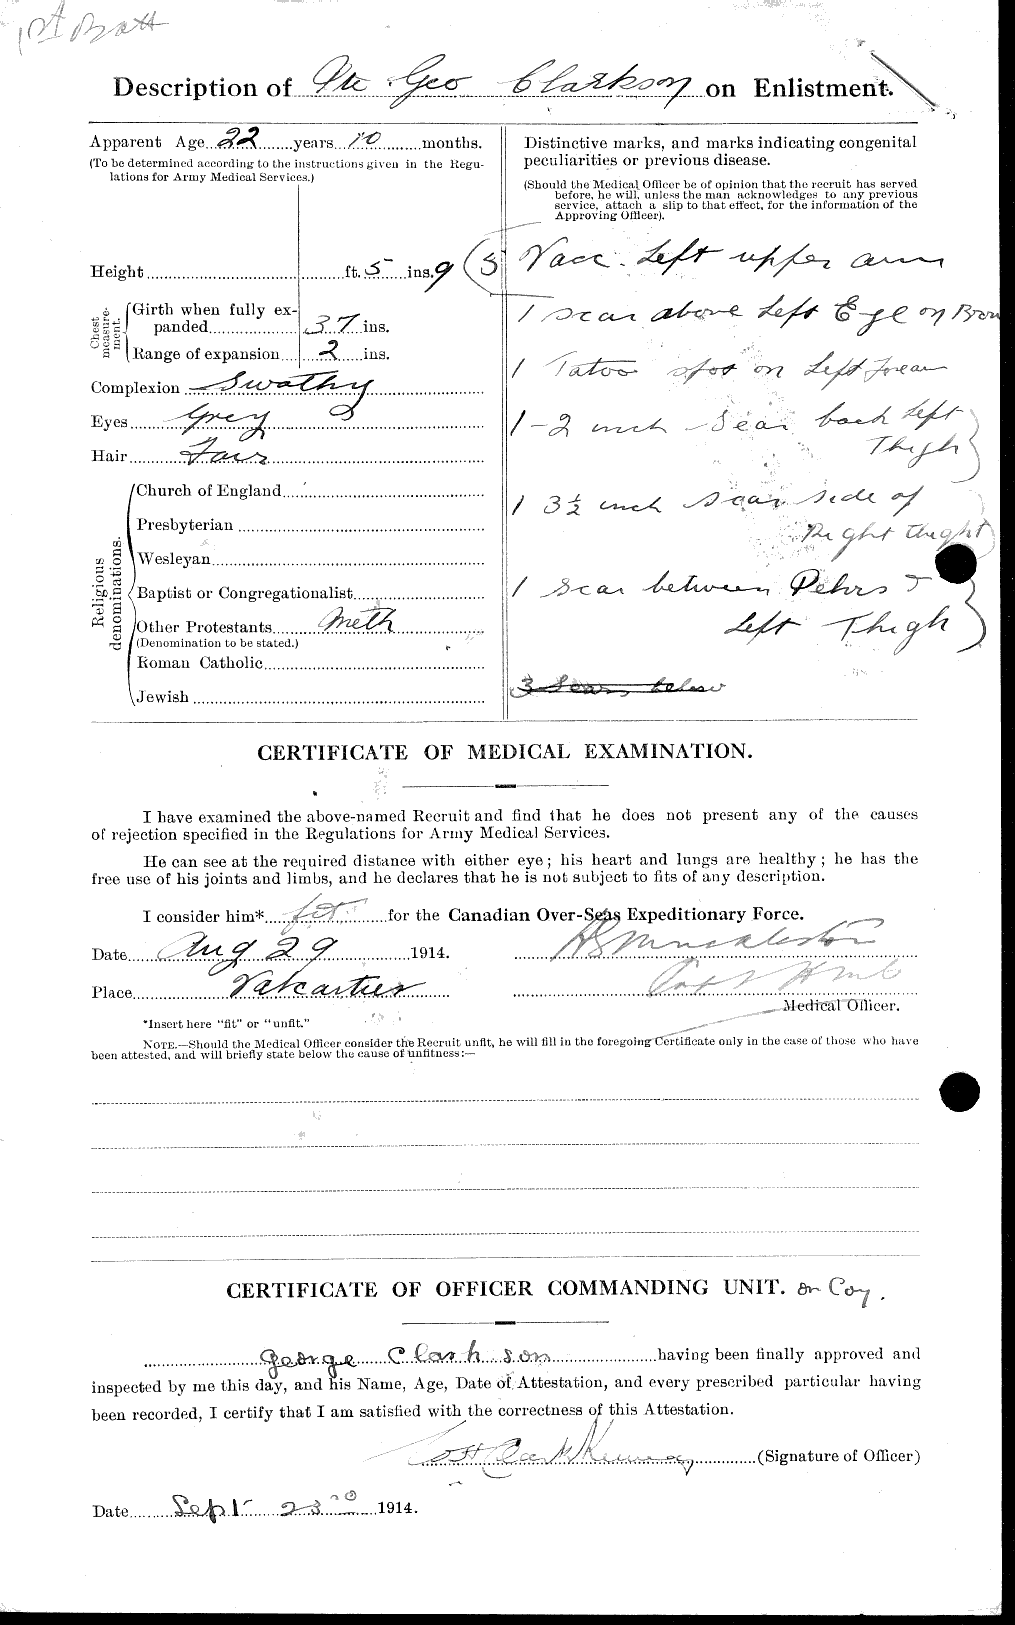 Dossiers du Personnel de la Première Guerre mondiale - CEC 021428b